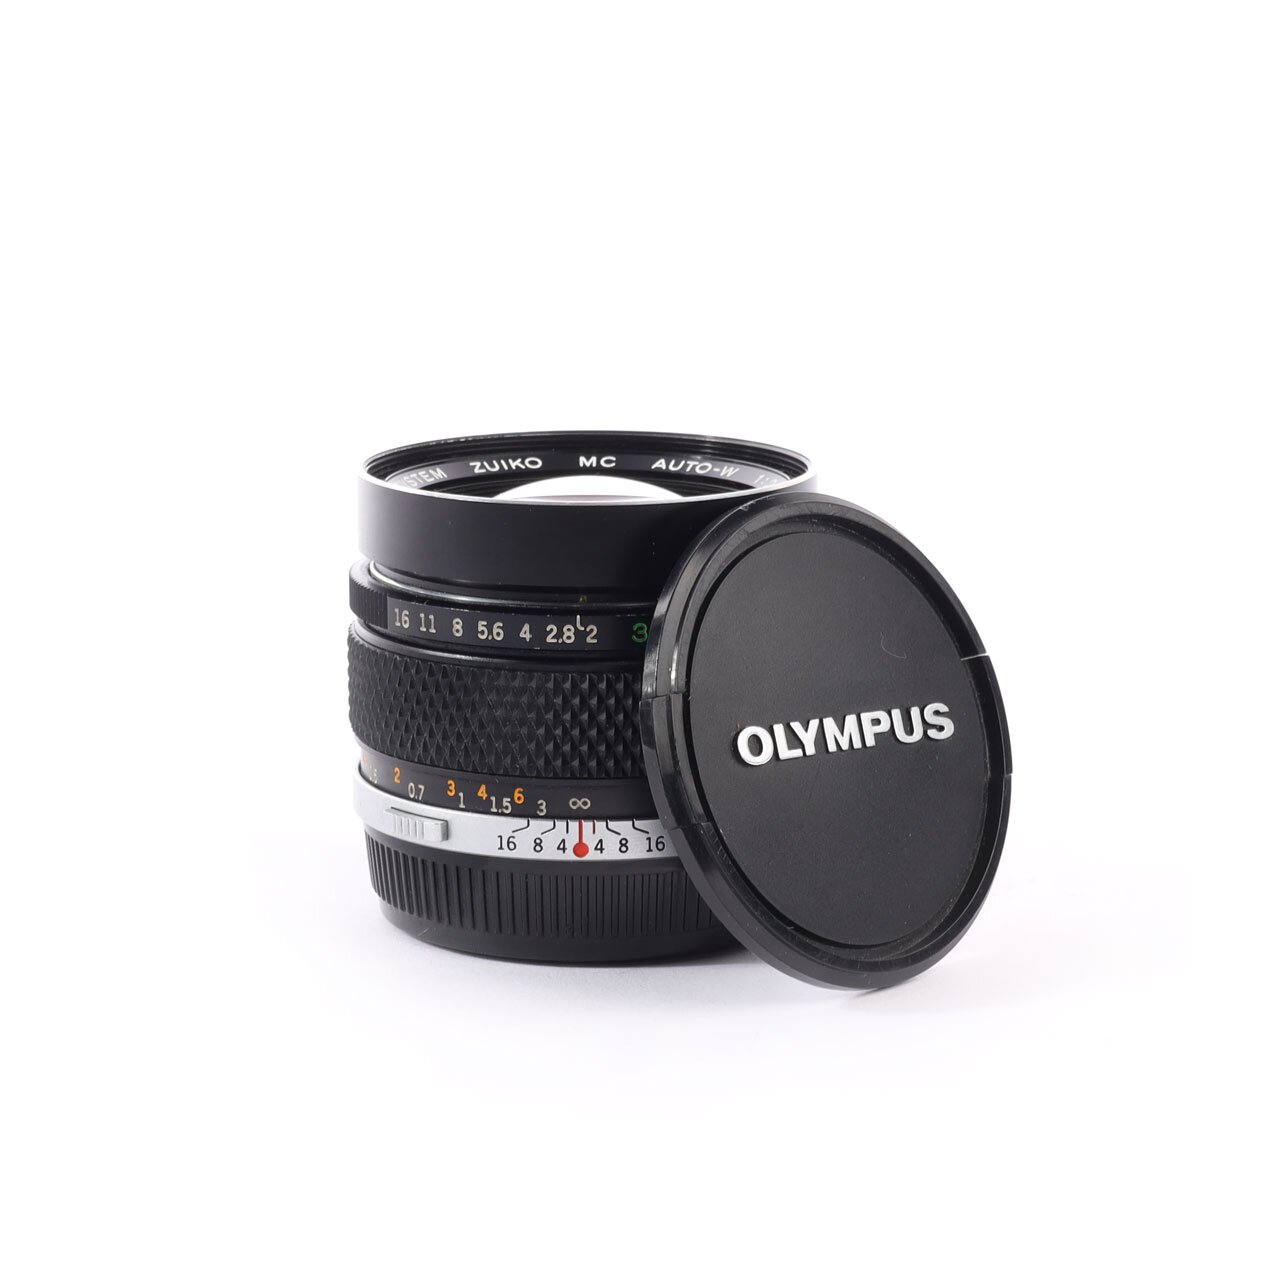 Olympus OM System 2/35mm